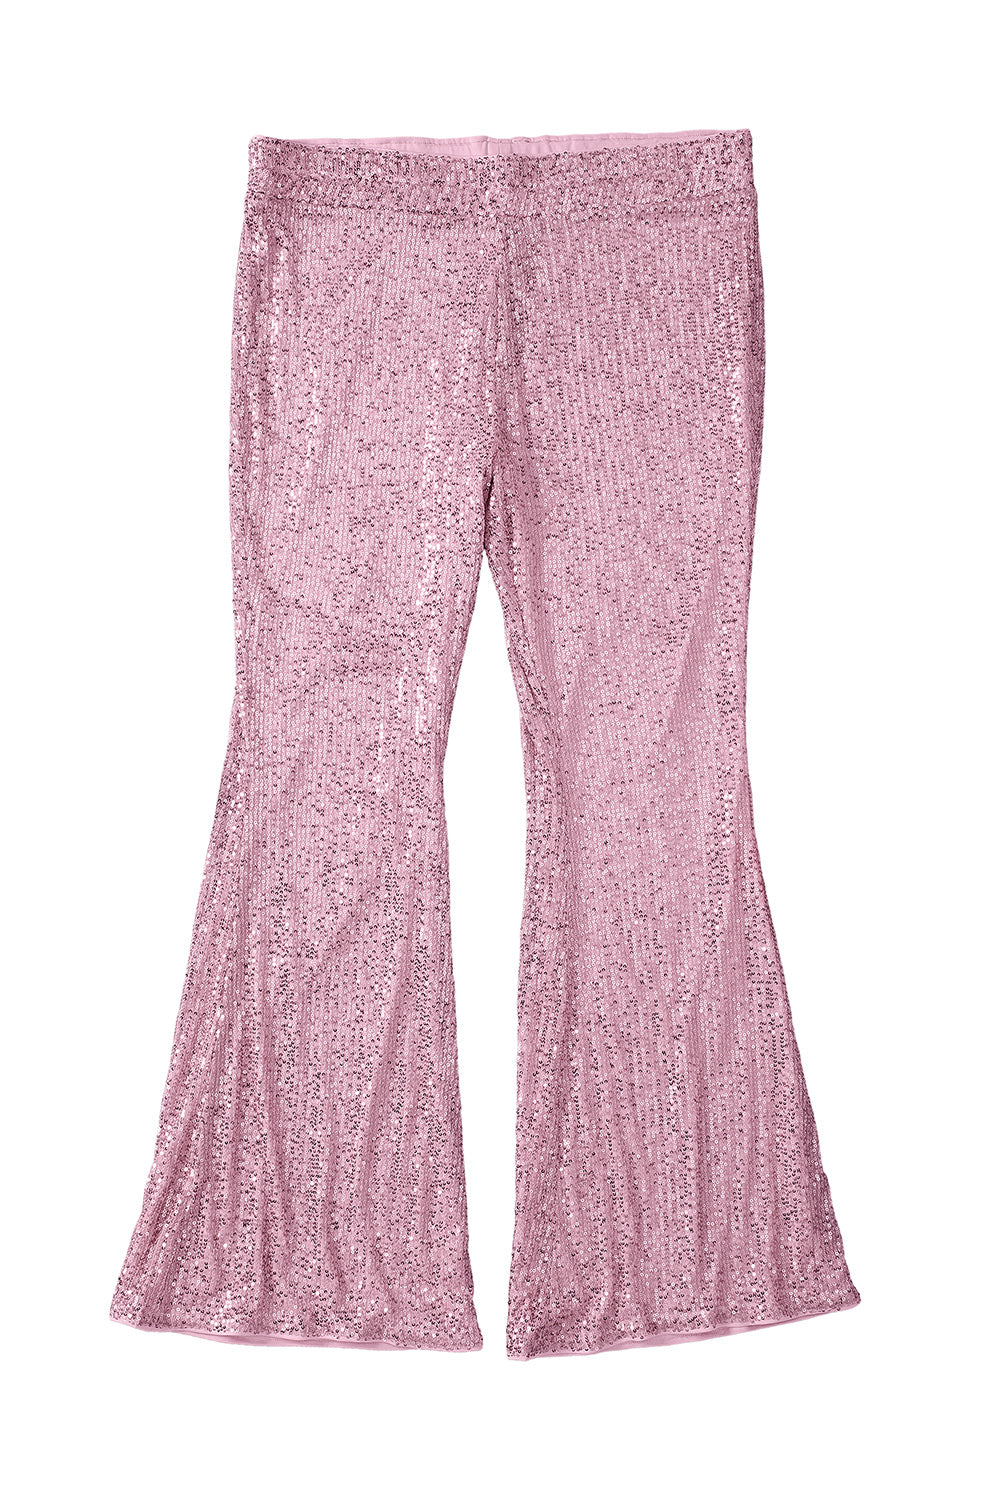 Pantaloni svasati fluidi taglie forti con paillettes rosa lucide